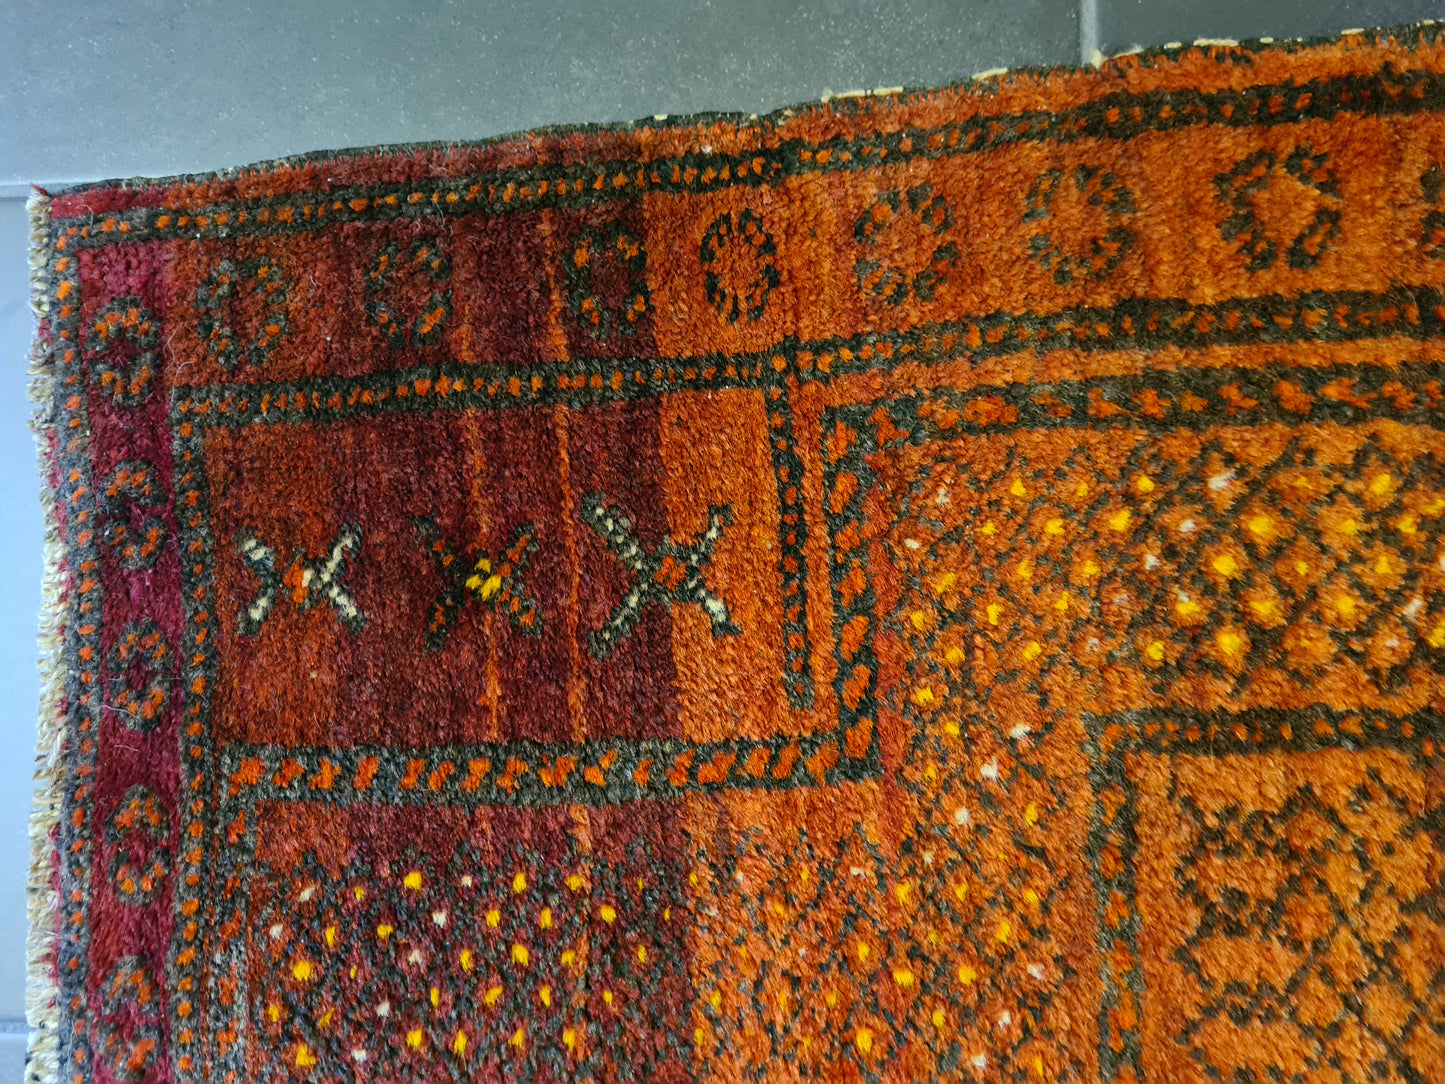 Antiker Afghanischer Gebetsteppich Handgeknüpfter Orientteppich Mihrab 126x93cm